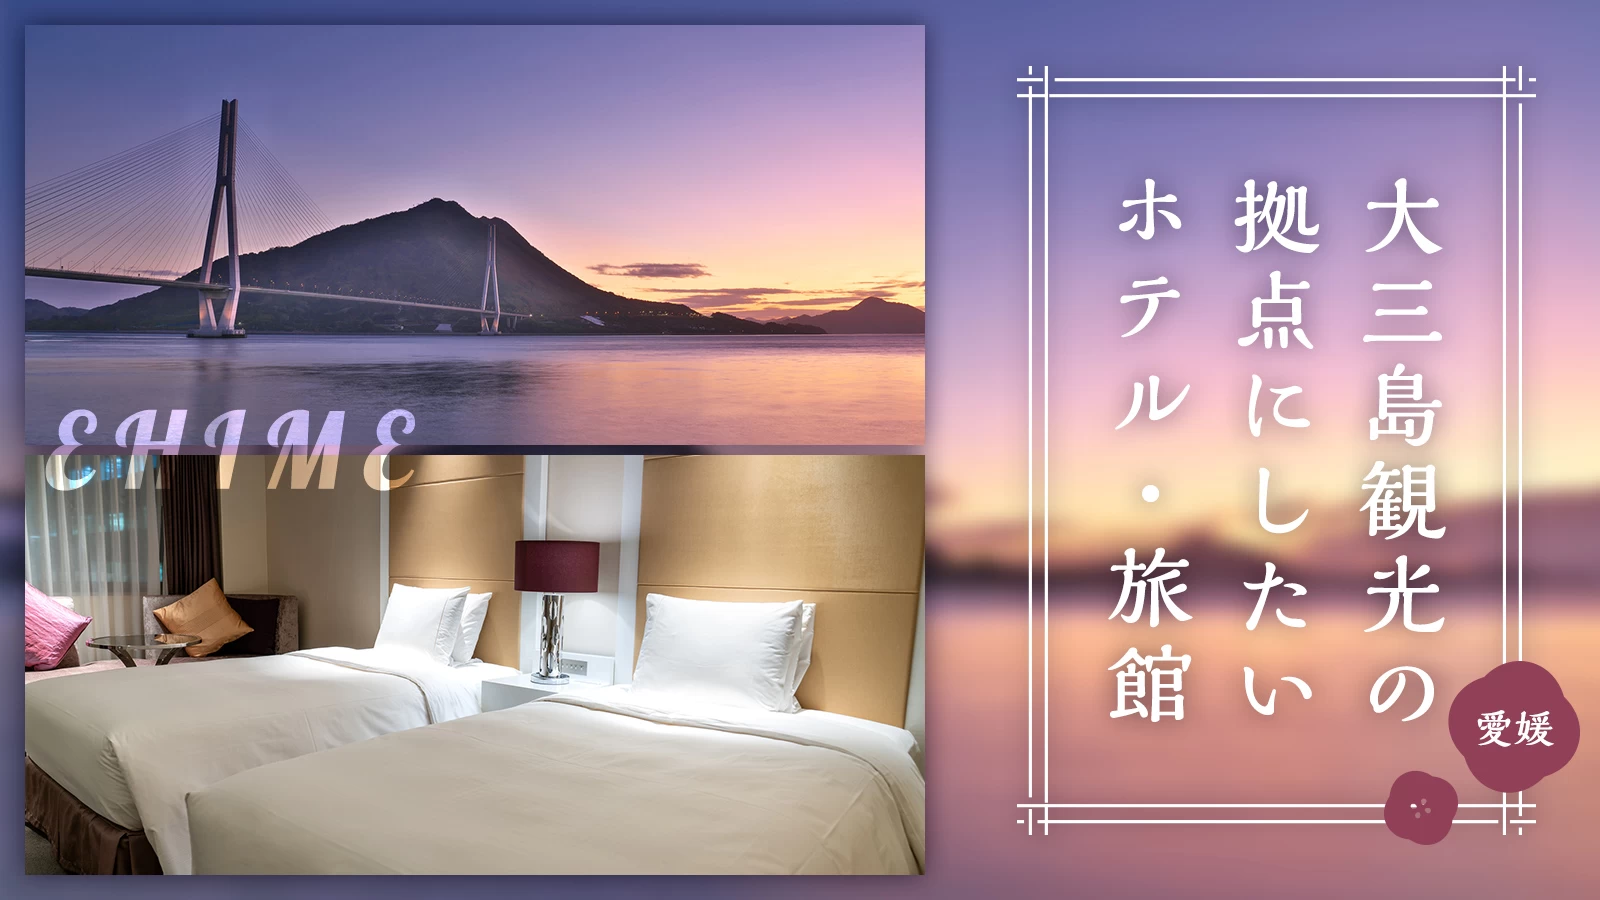 【四国・愛媛】大三島観光の拠点にしたいおすすめホテル・旅館4選